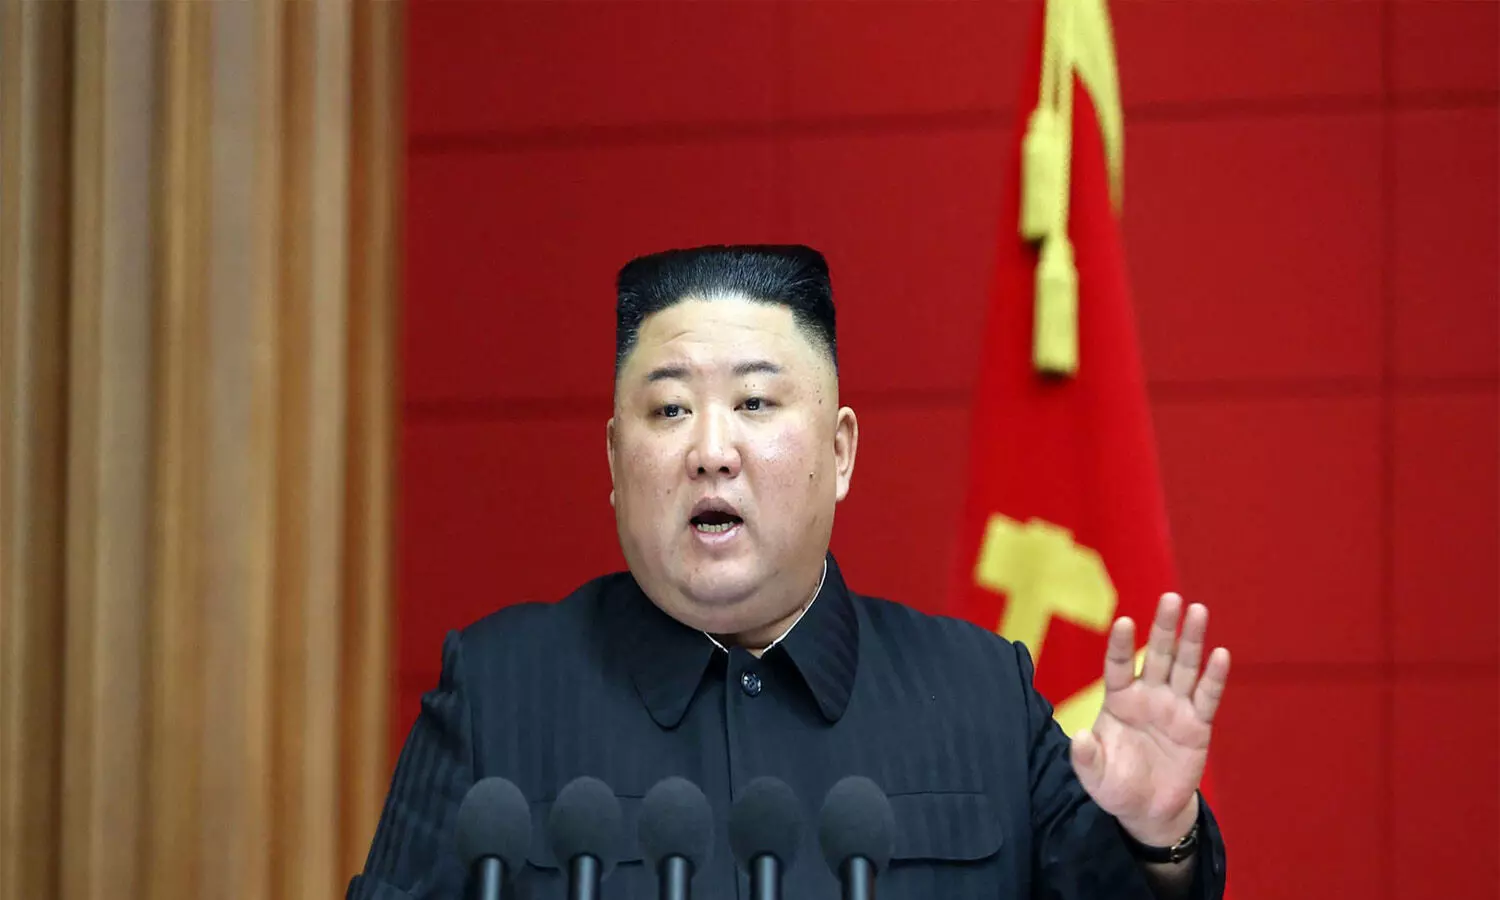 North Korea Kim Jong-Un touts new large greenhouse farm built on ex-missile test site